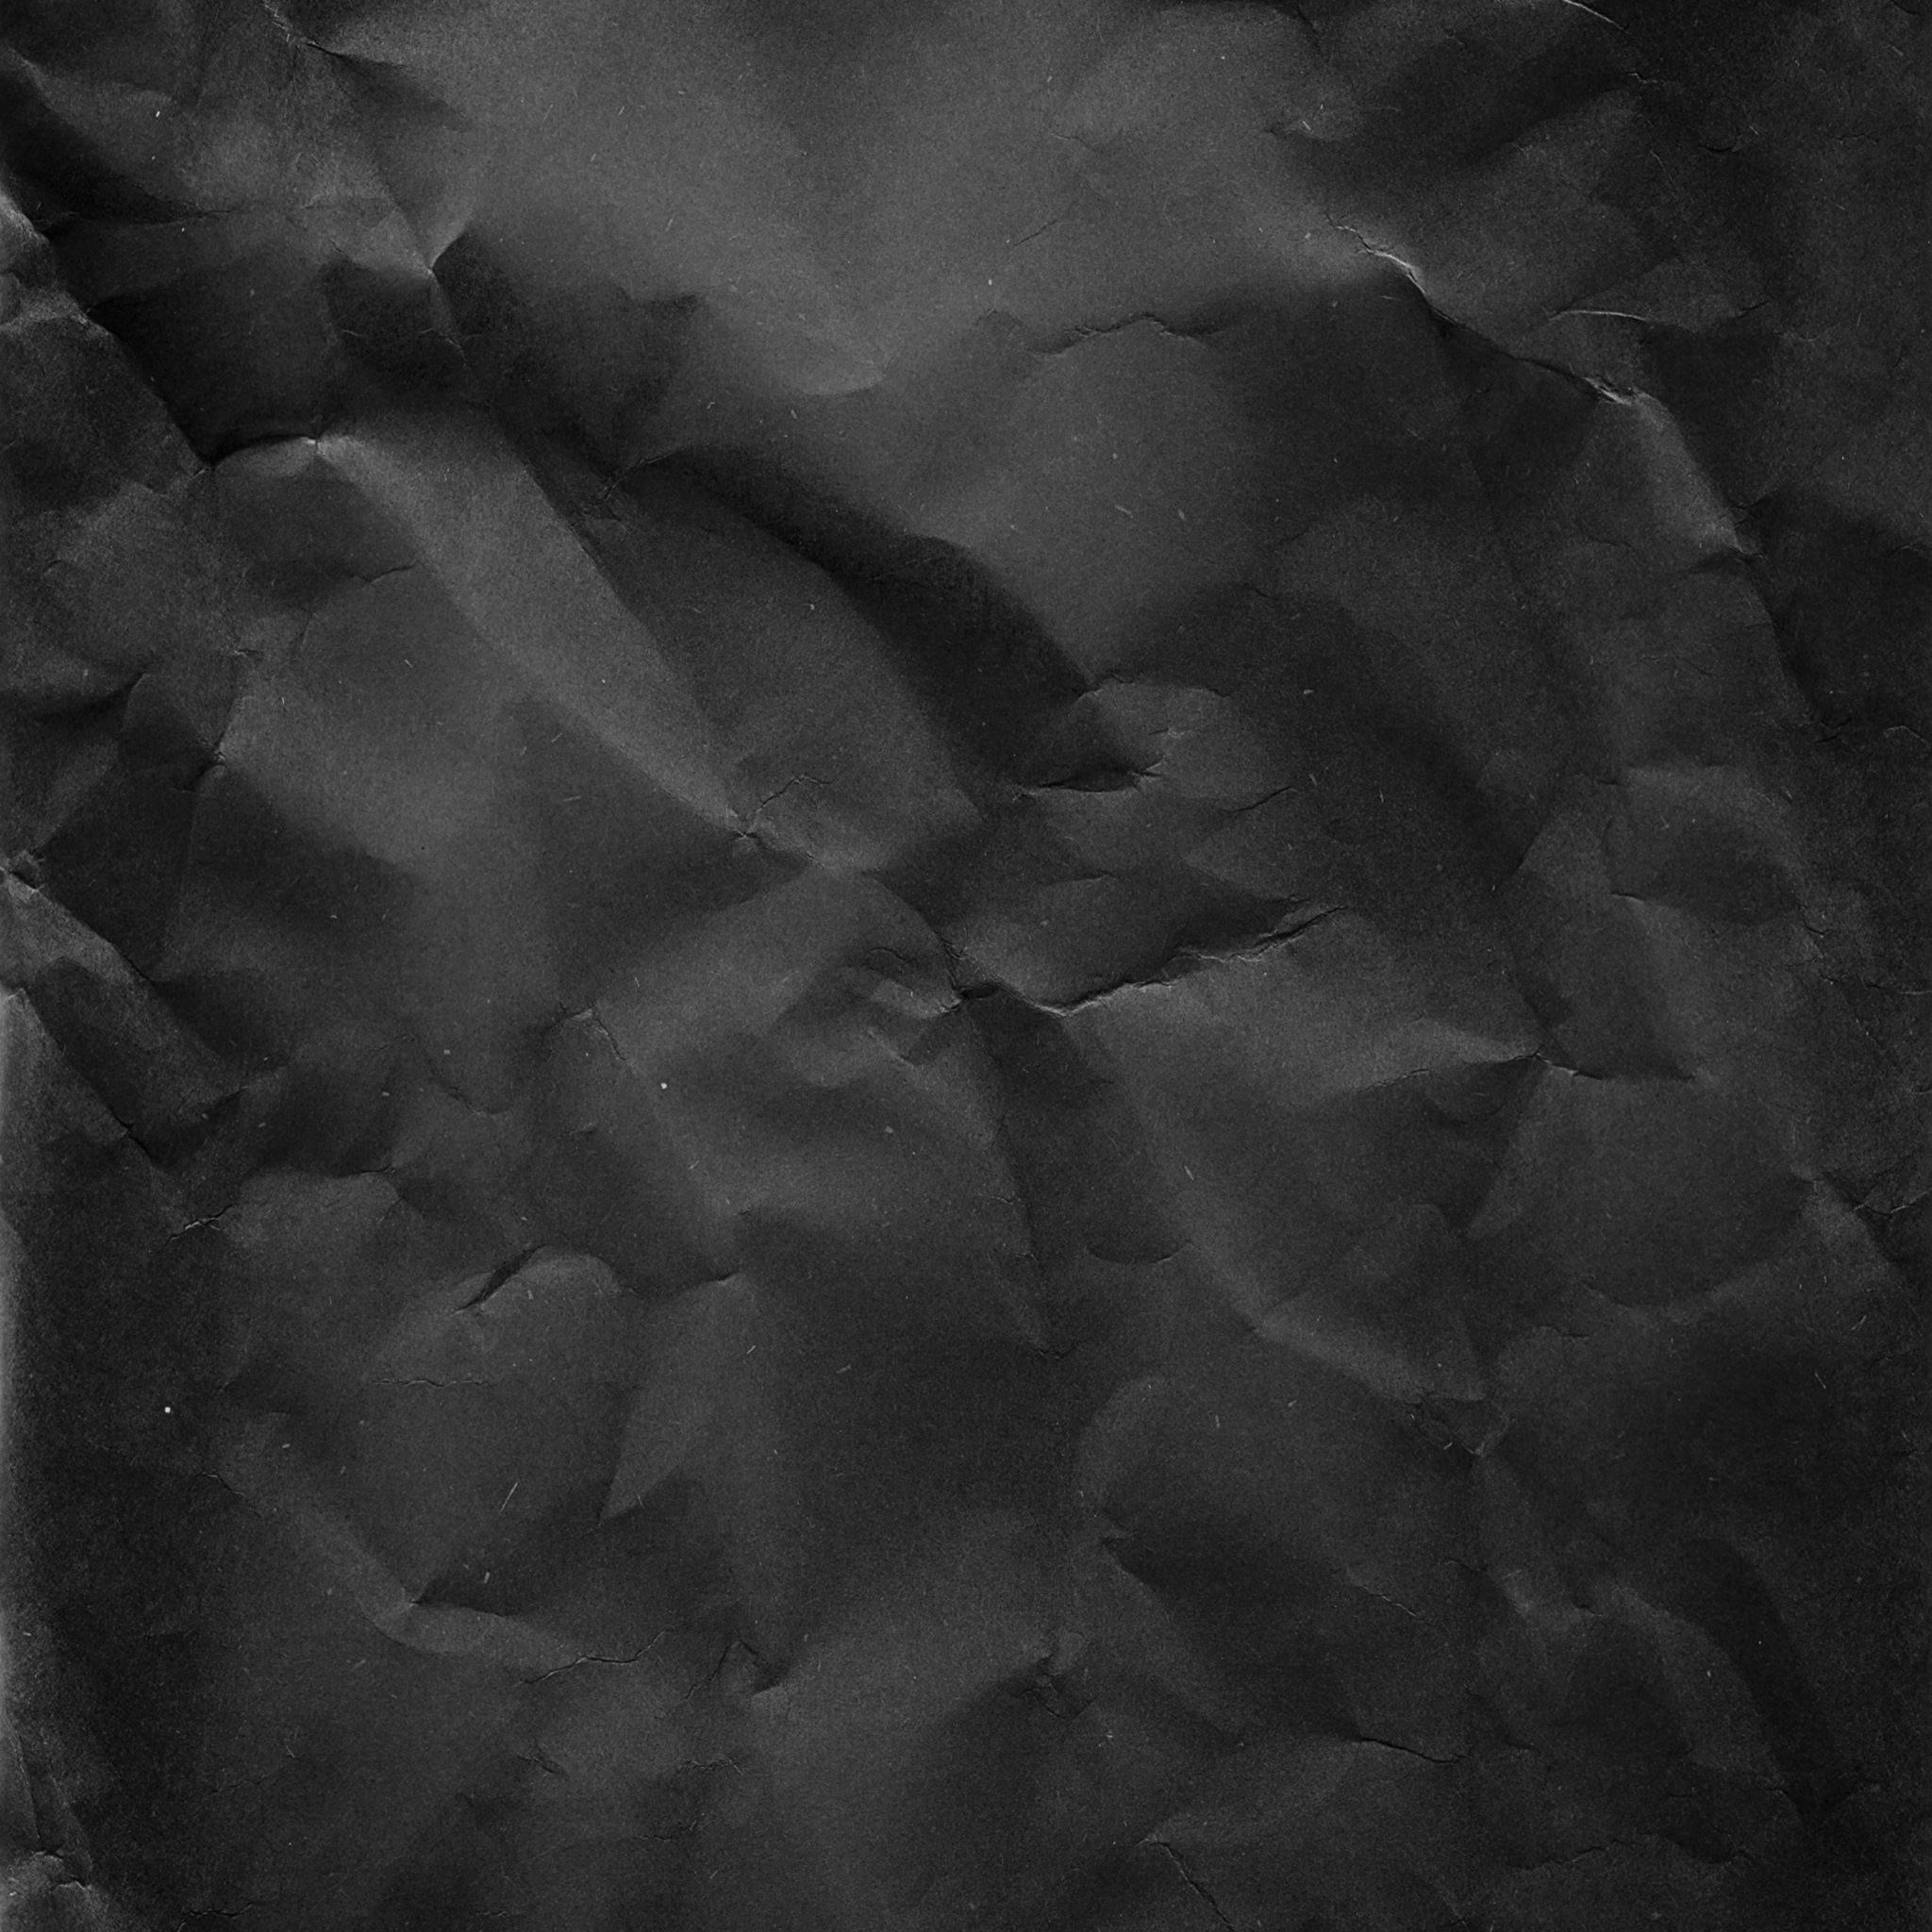 papel pintado de papel negro,negro,blanco,en blanco y negro,fotografía monocroma,monocromo